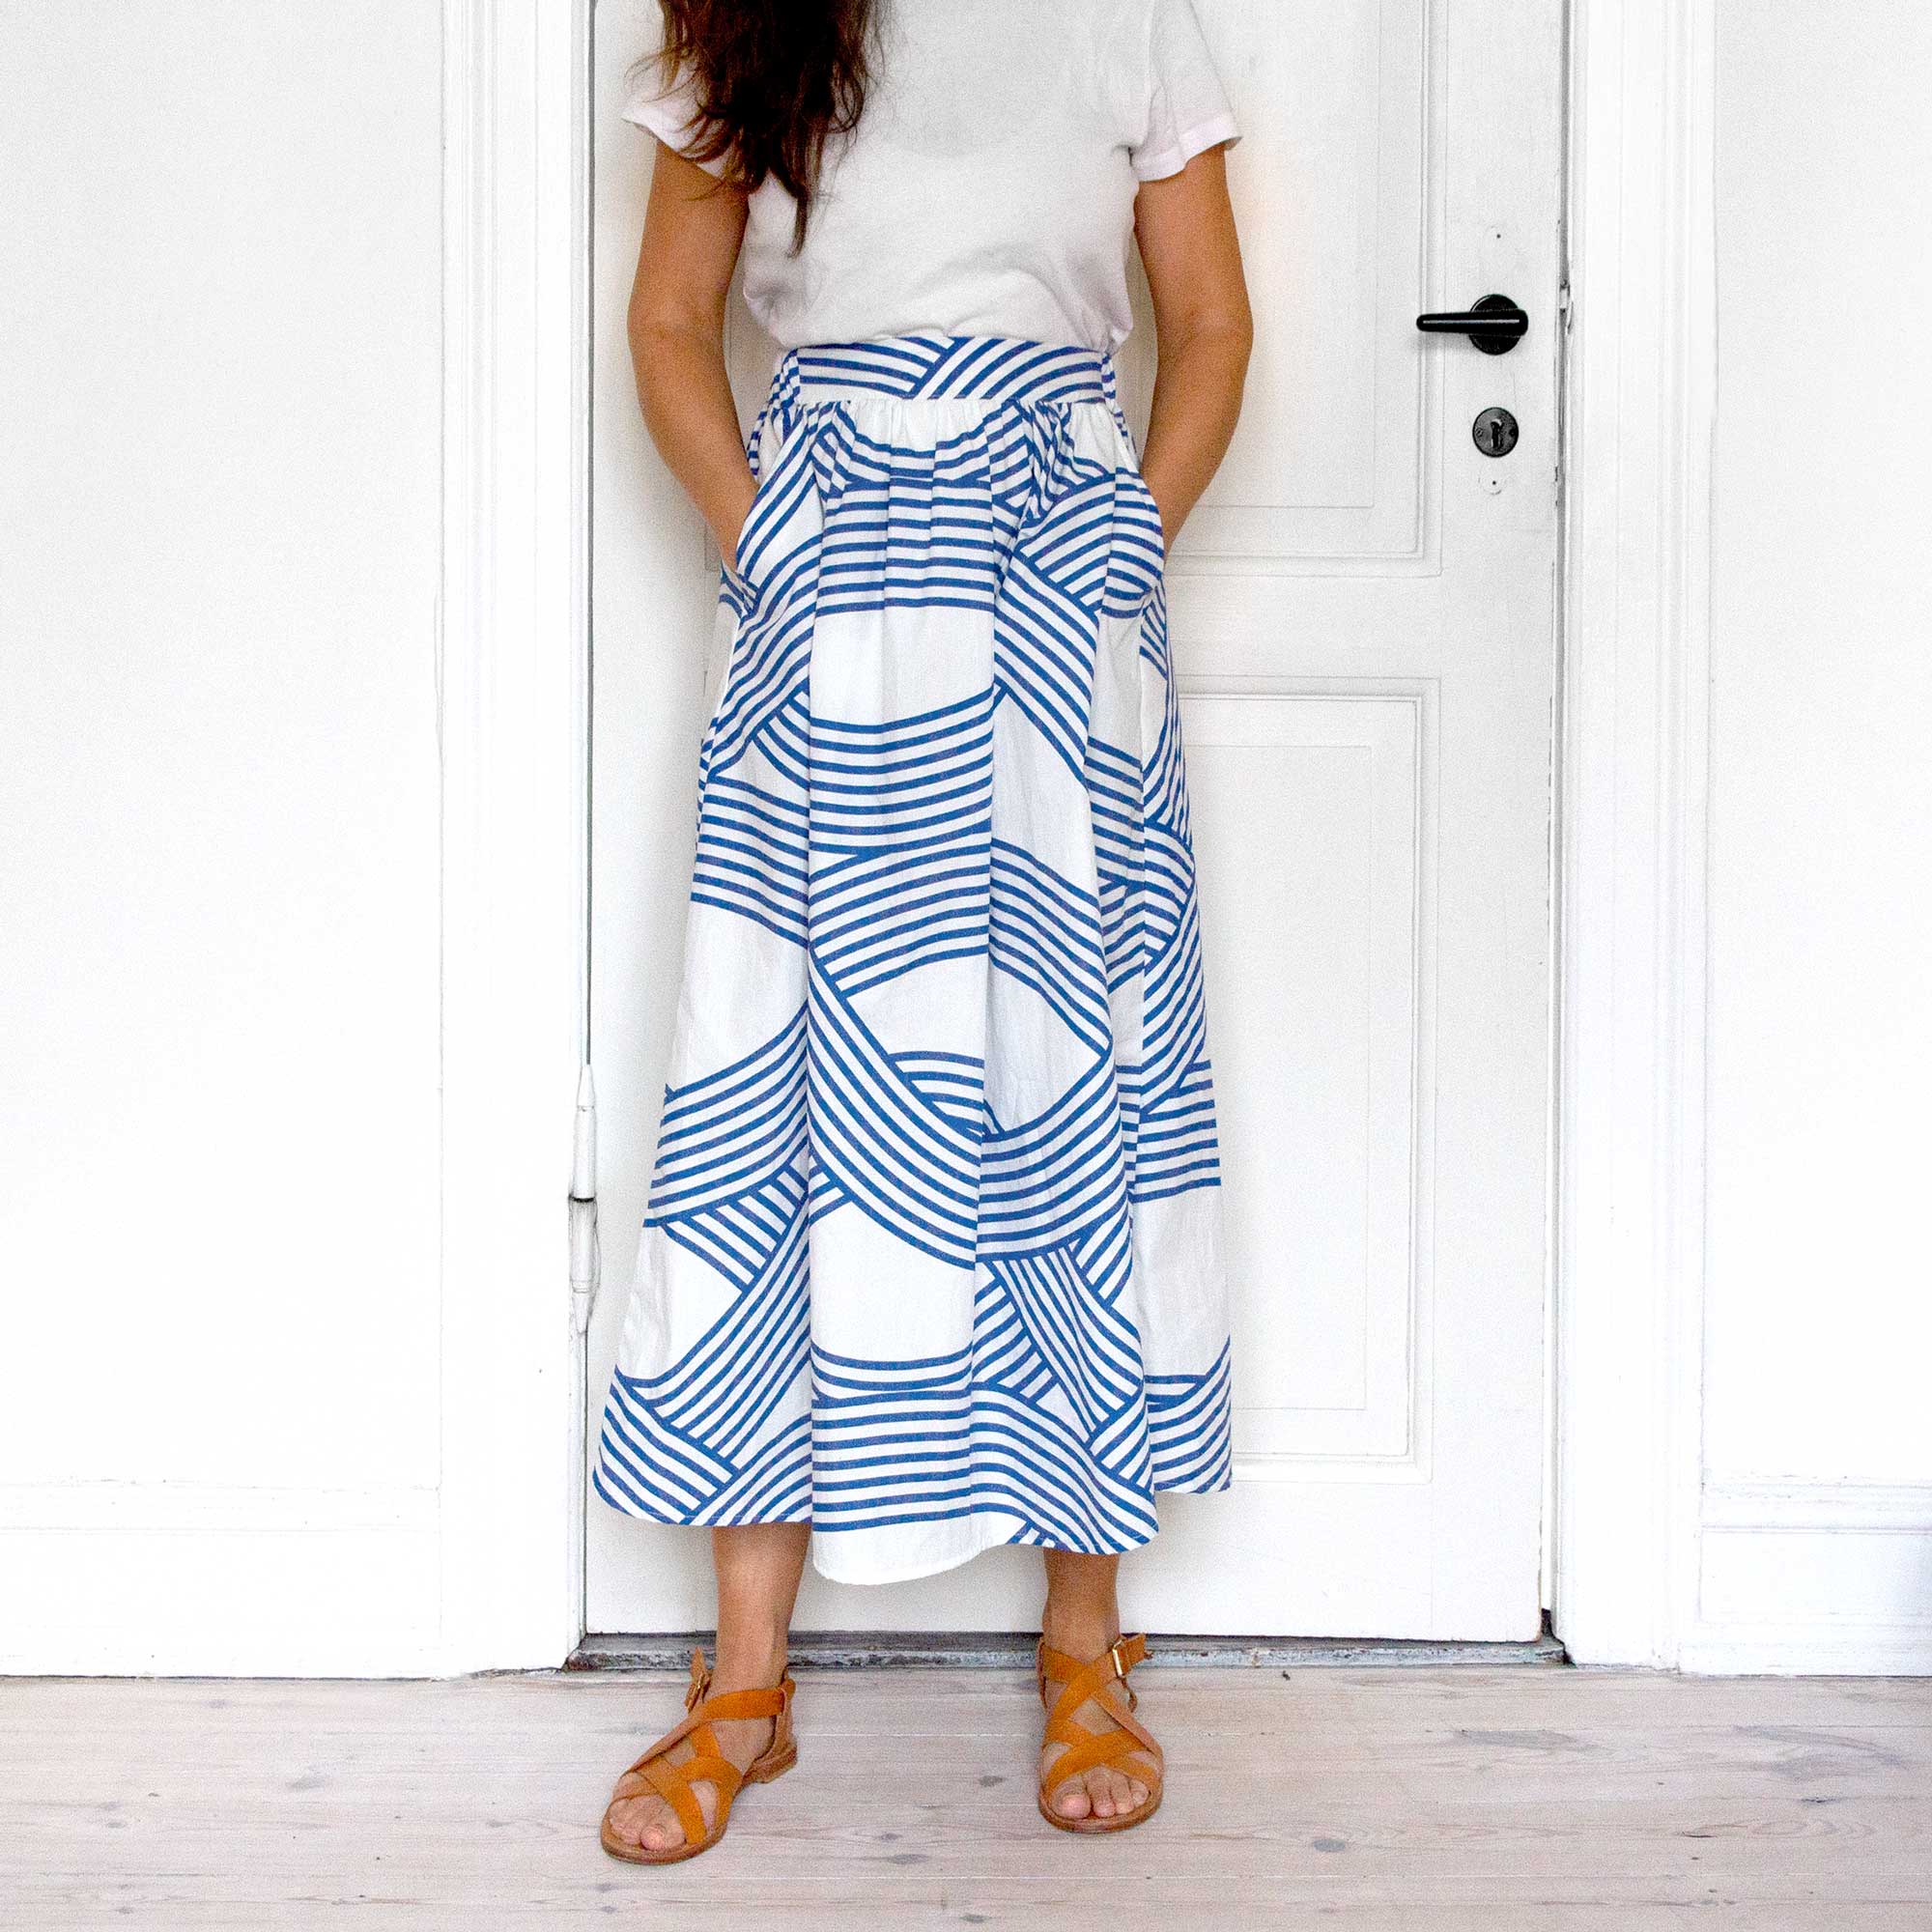 Ocean organic cotton skirt, printed in Germany sewn in Denmark. Design Anne Rosenberg